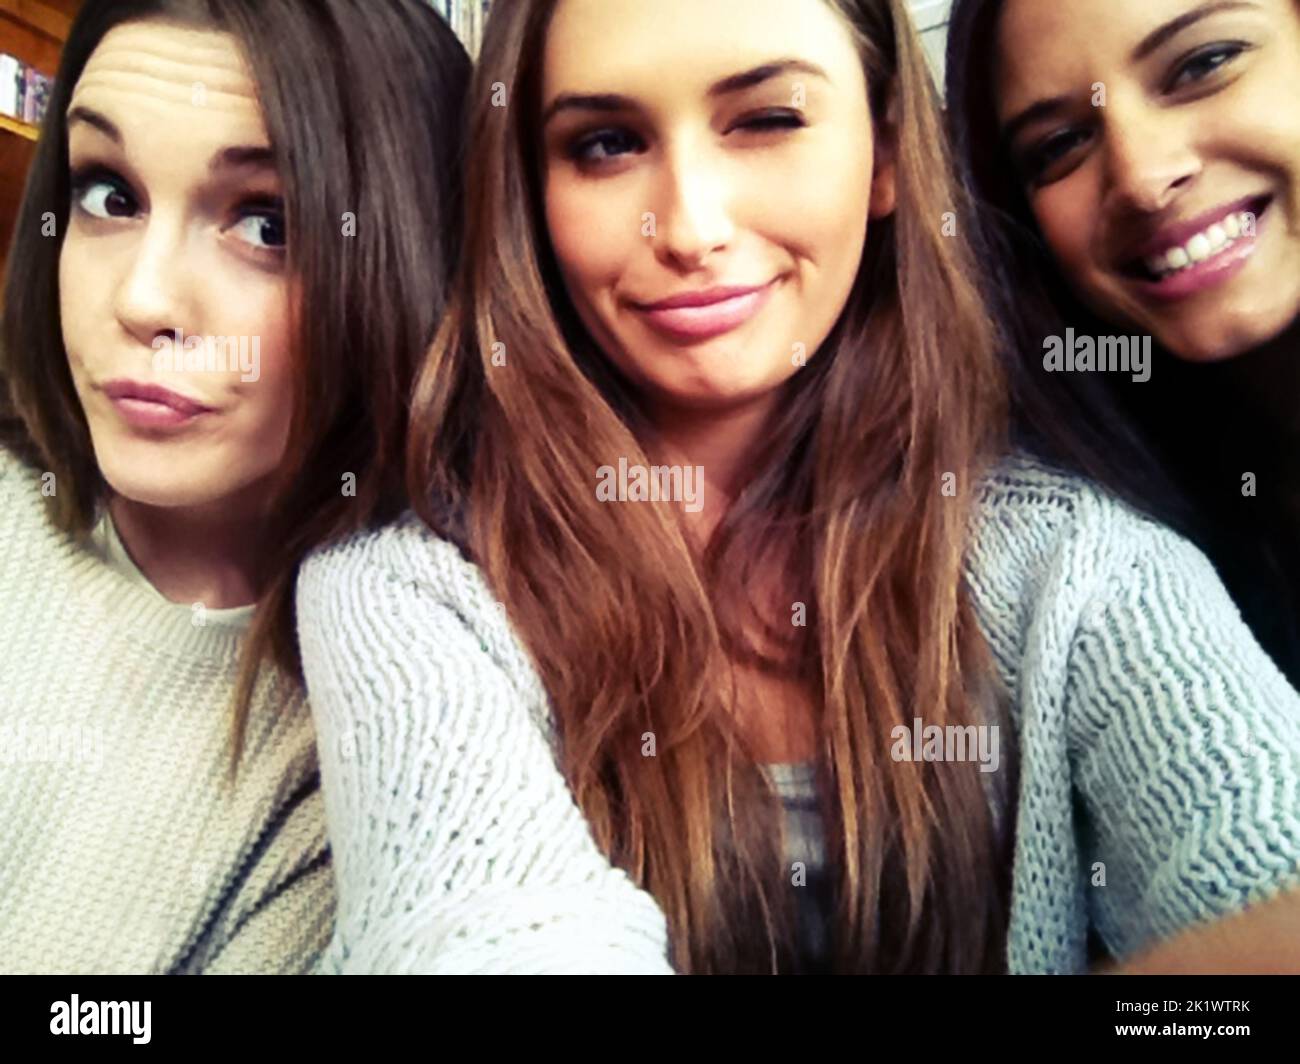 Bellezas jóvenes. Tres hermosas mujeres jóvenes tomando un selfie. Foto de stock